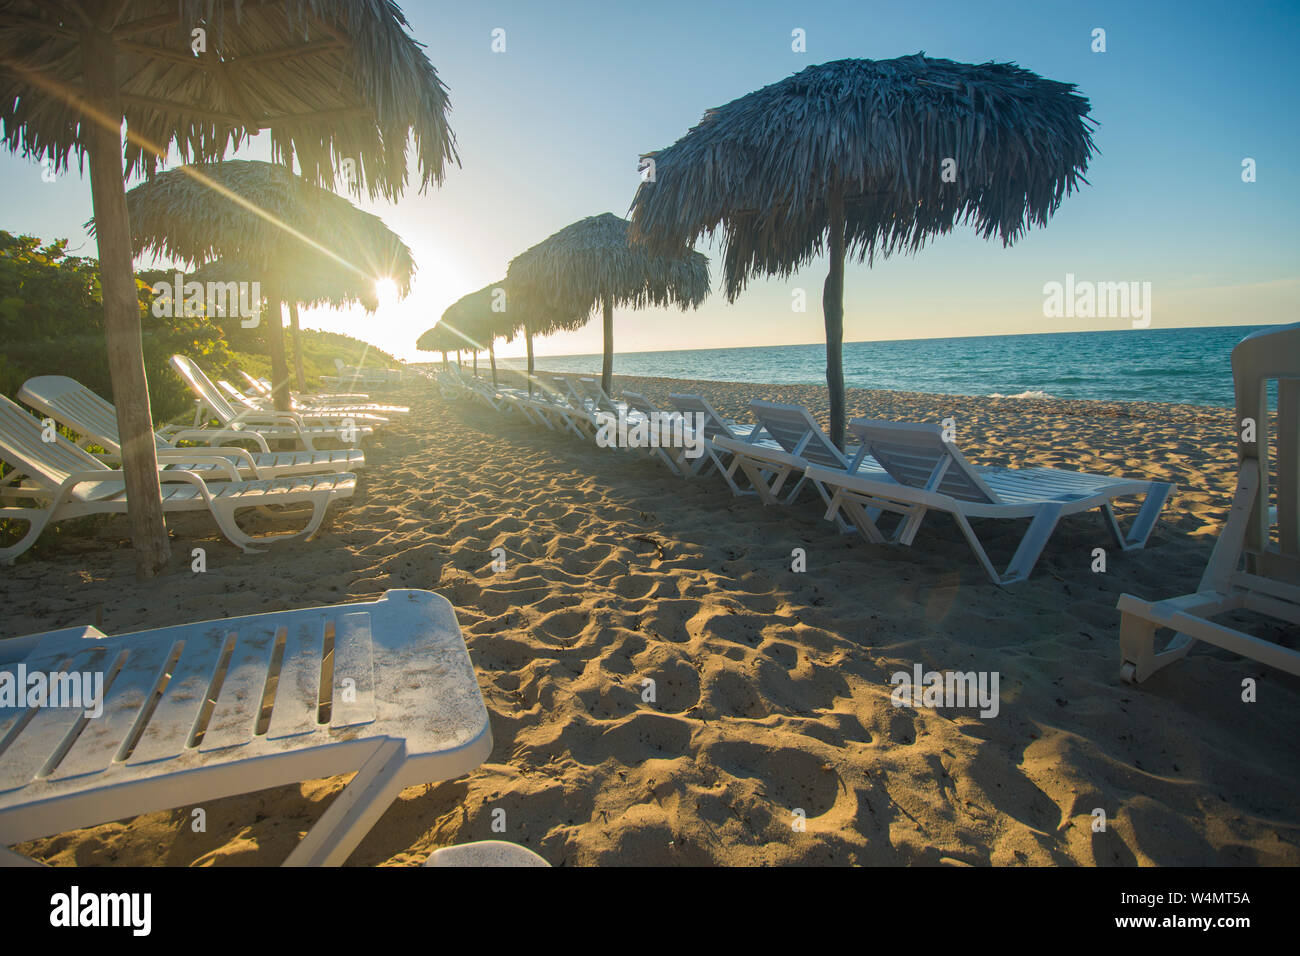 Varadero Beach ist ein tolles Reiseziel in der Karibik. Hotels und Resorts mit Hunderte von Meilen von schönen Stränden. Reisen Standorte. Stockfoto